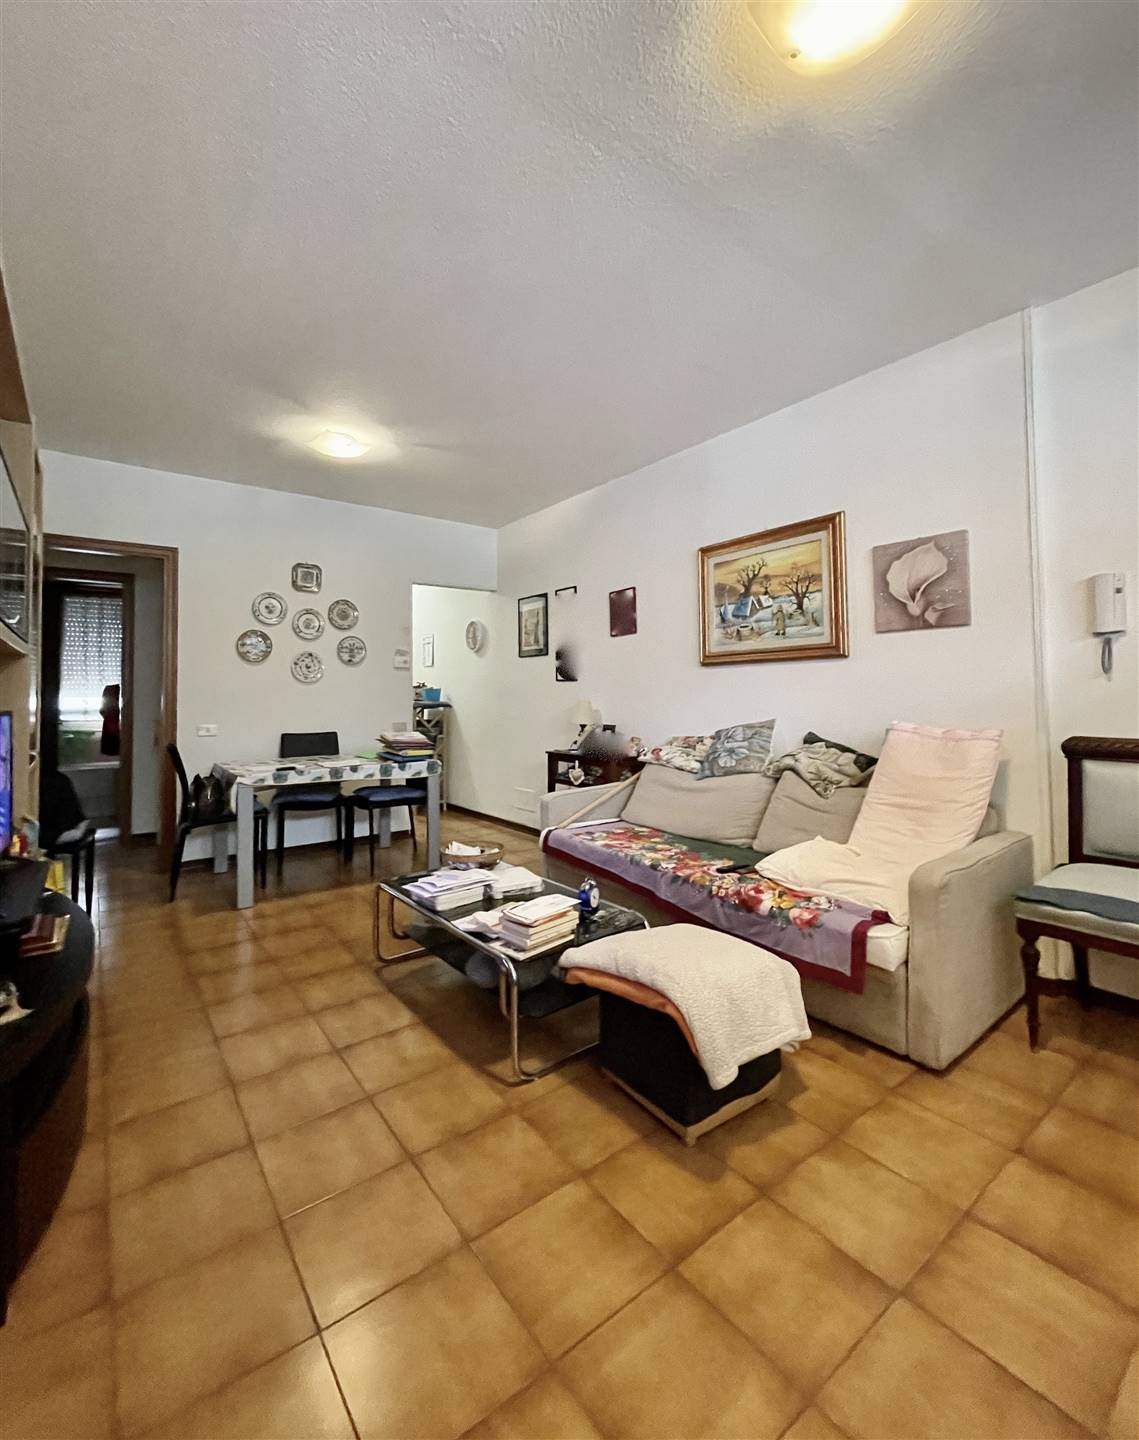 Appartamento in vendita a Vaiano, 3 locali, zona Località: CENTRO, prezzo € 130.000 | PortaleAgenzieImmobiliari.it